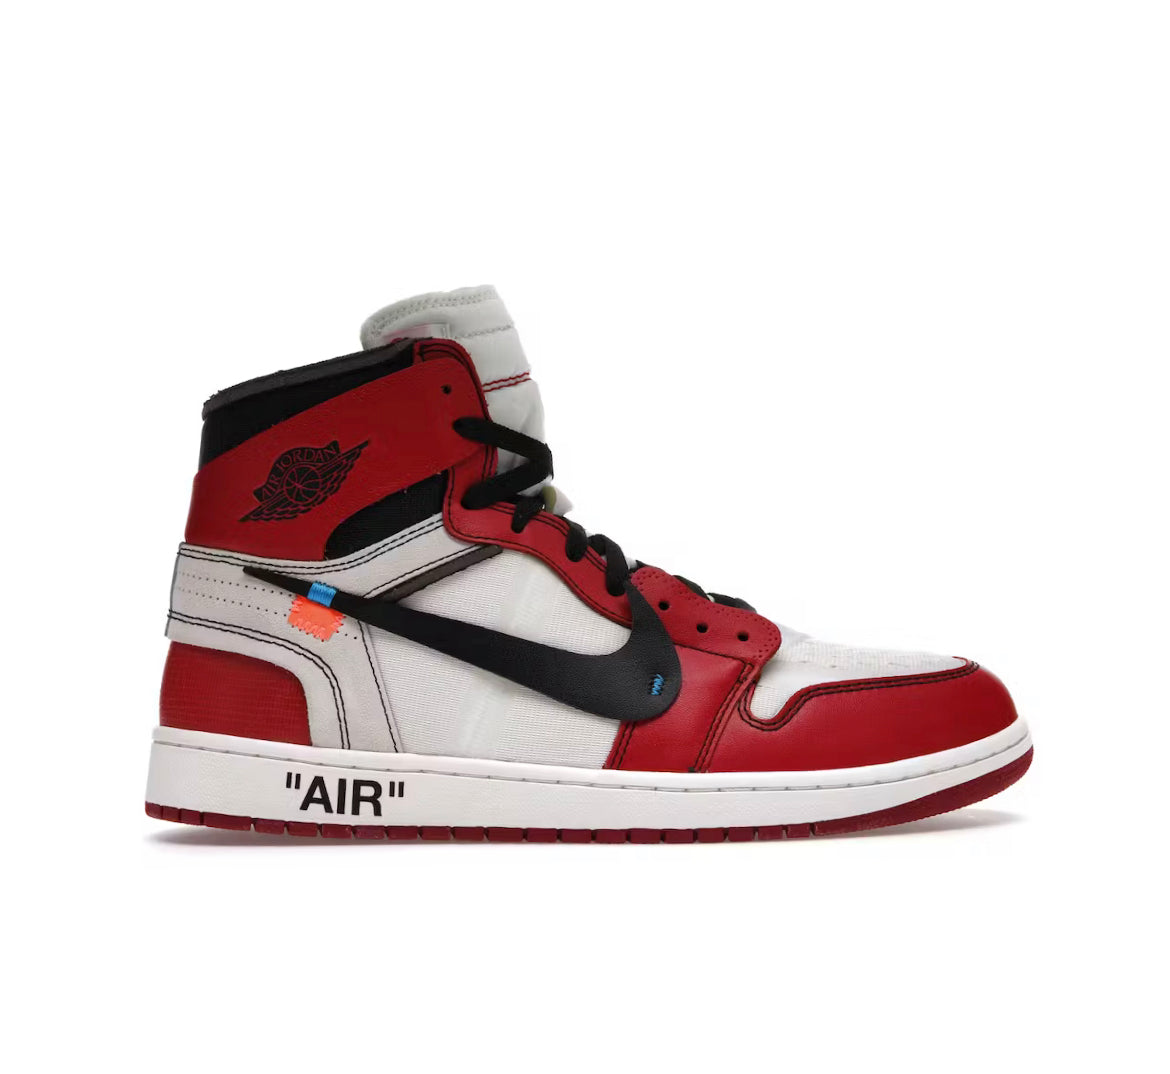 Off-White x Nike Air Jordan 1 High ‘Chicago’